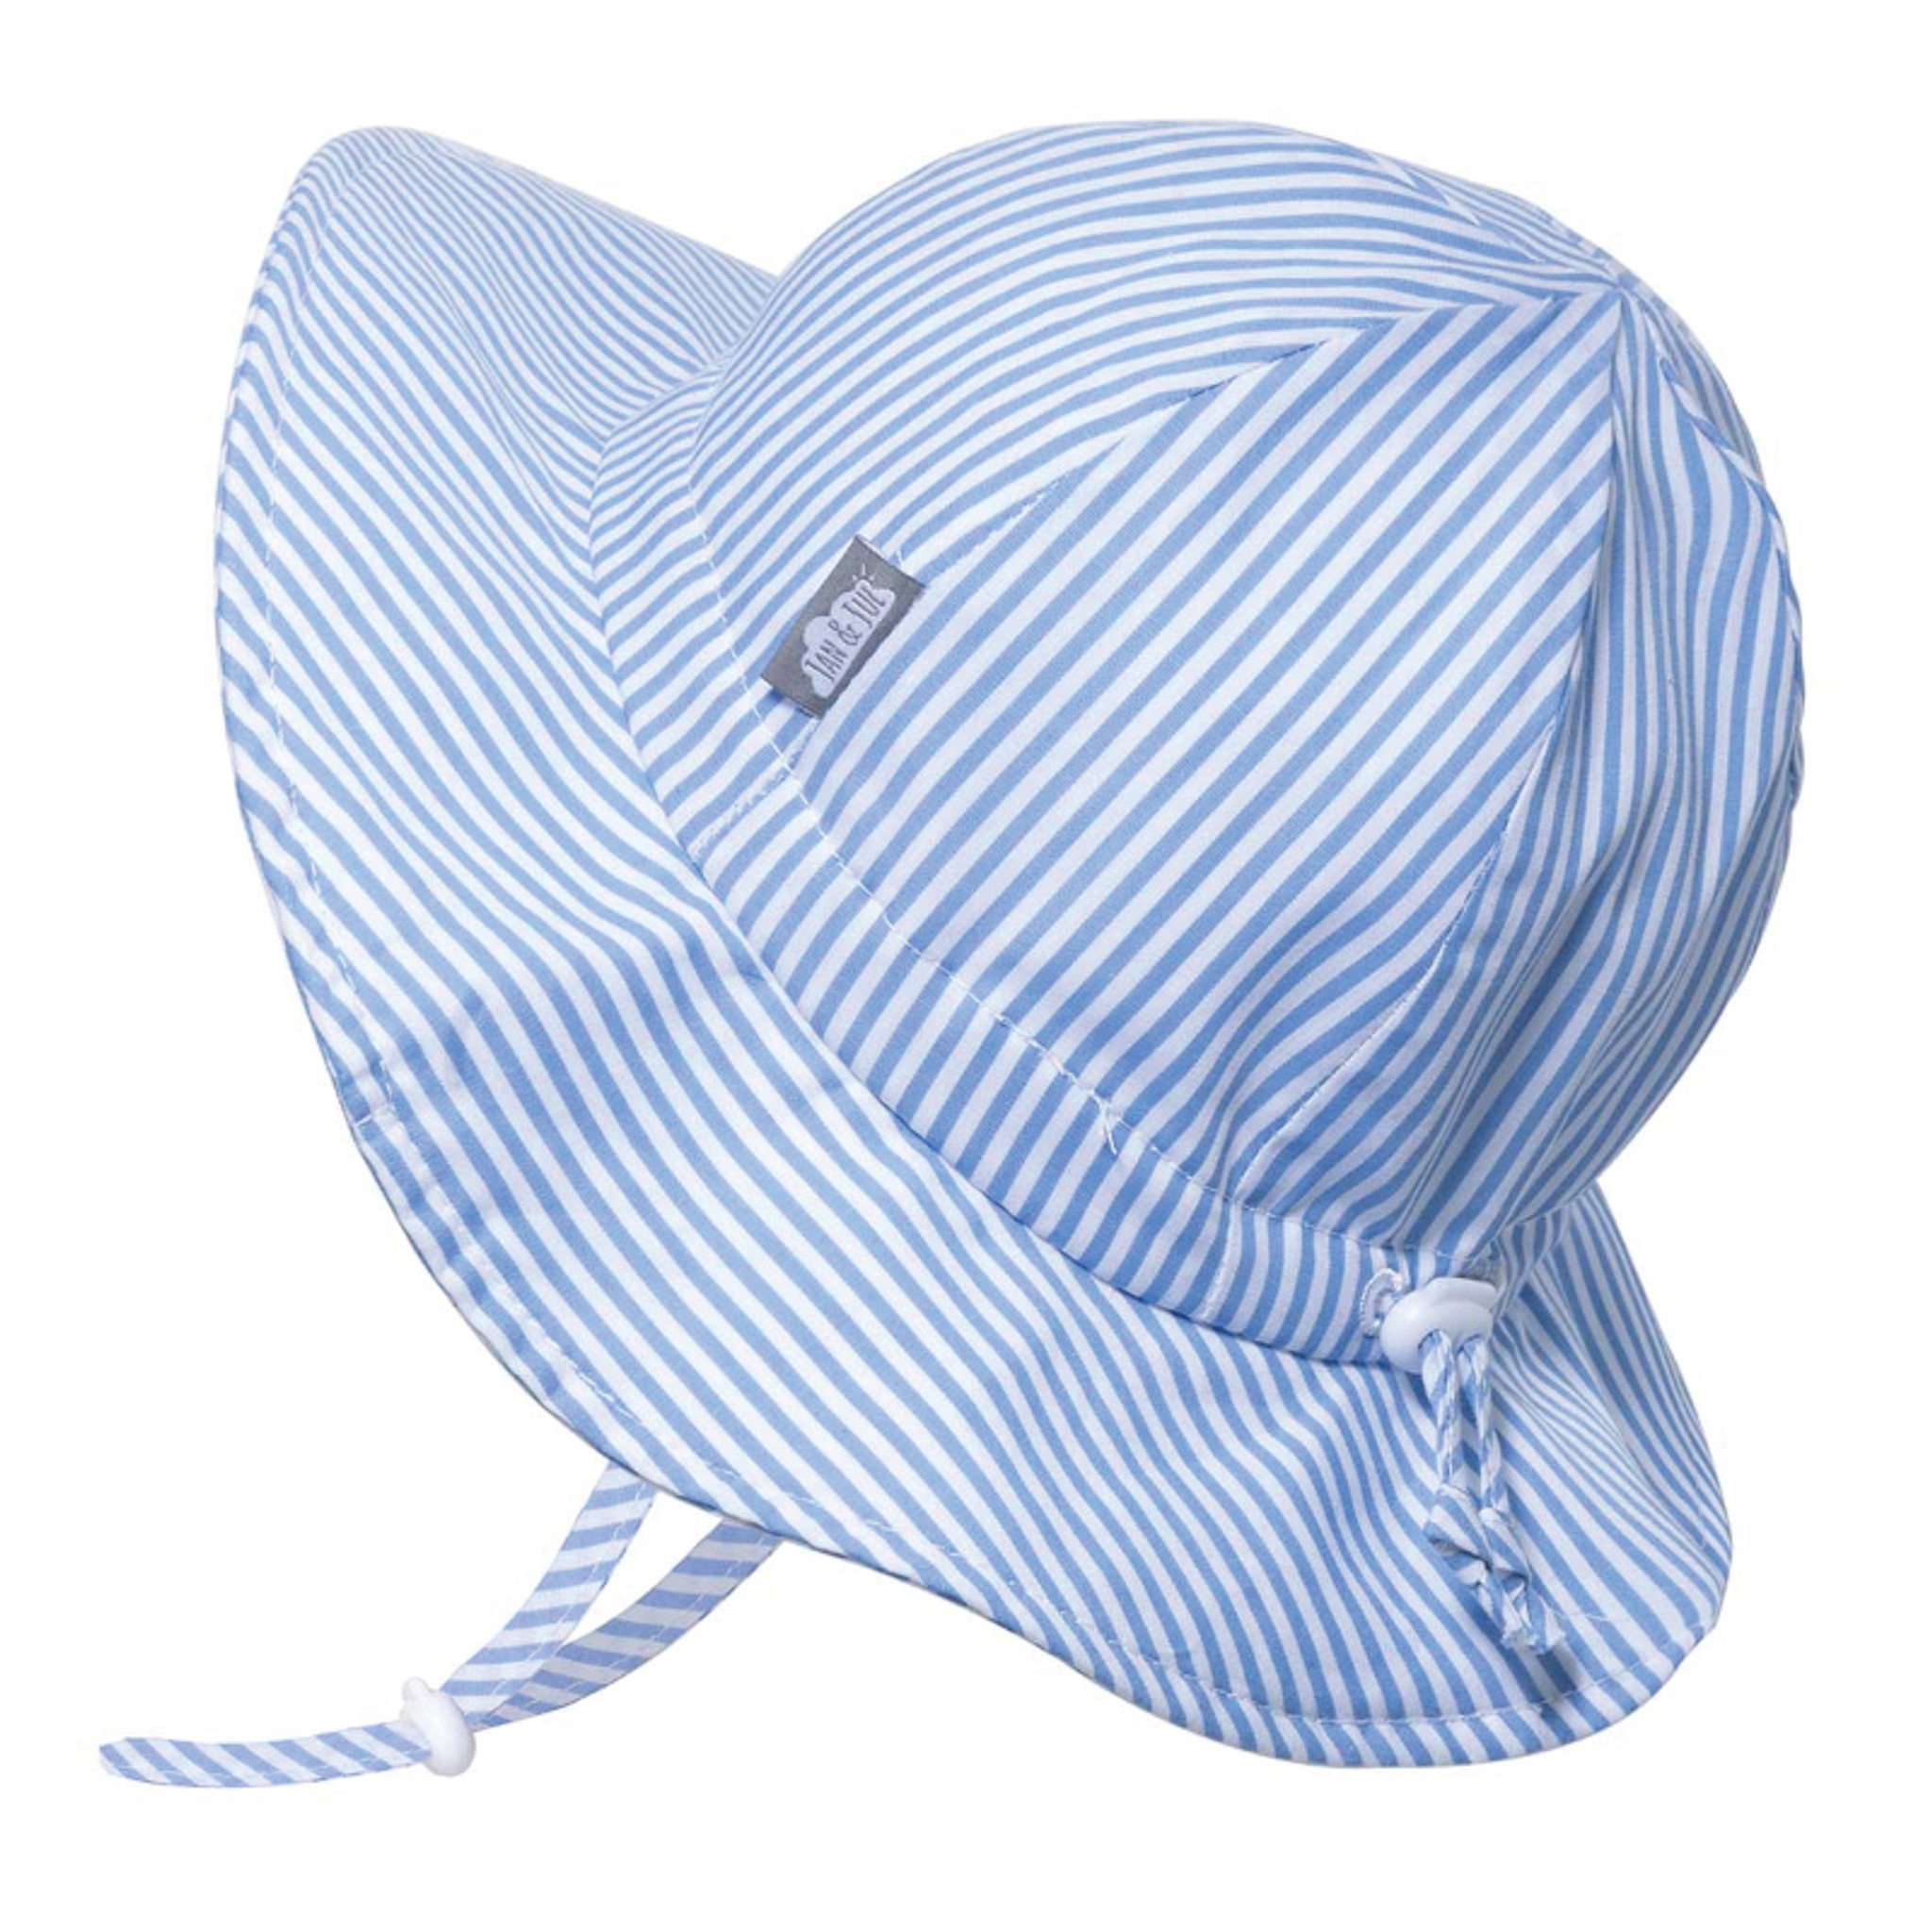 Jan & Jul Floppy Cotton Sun Hat - Blue Stripe